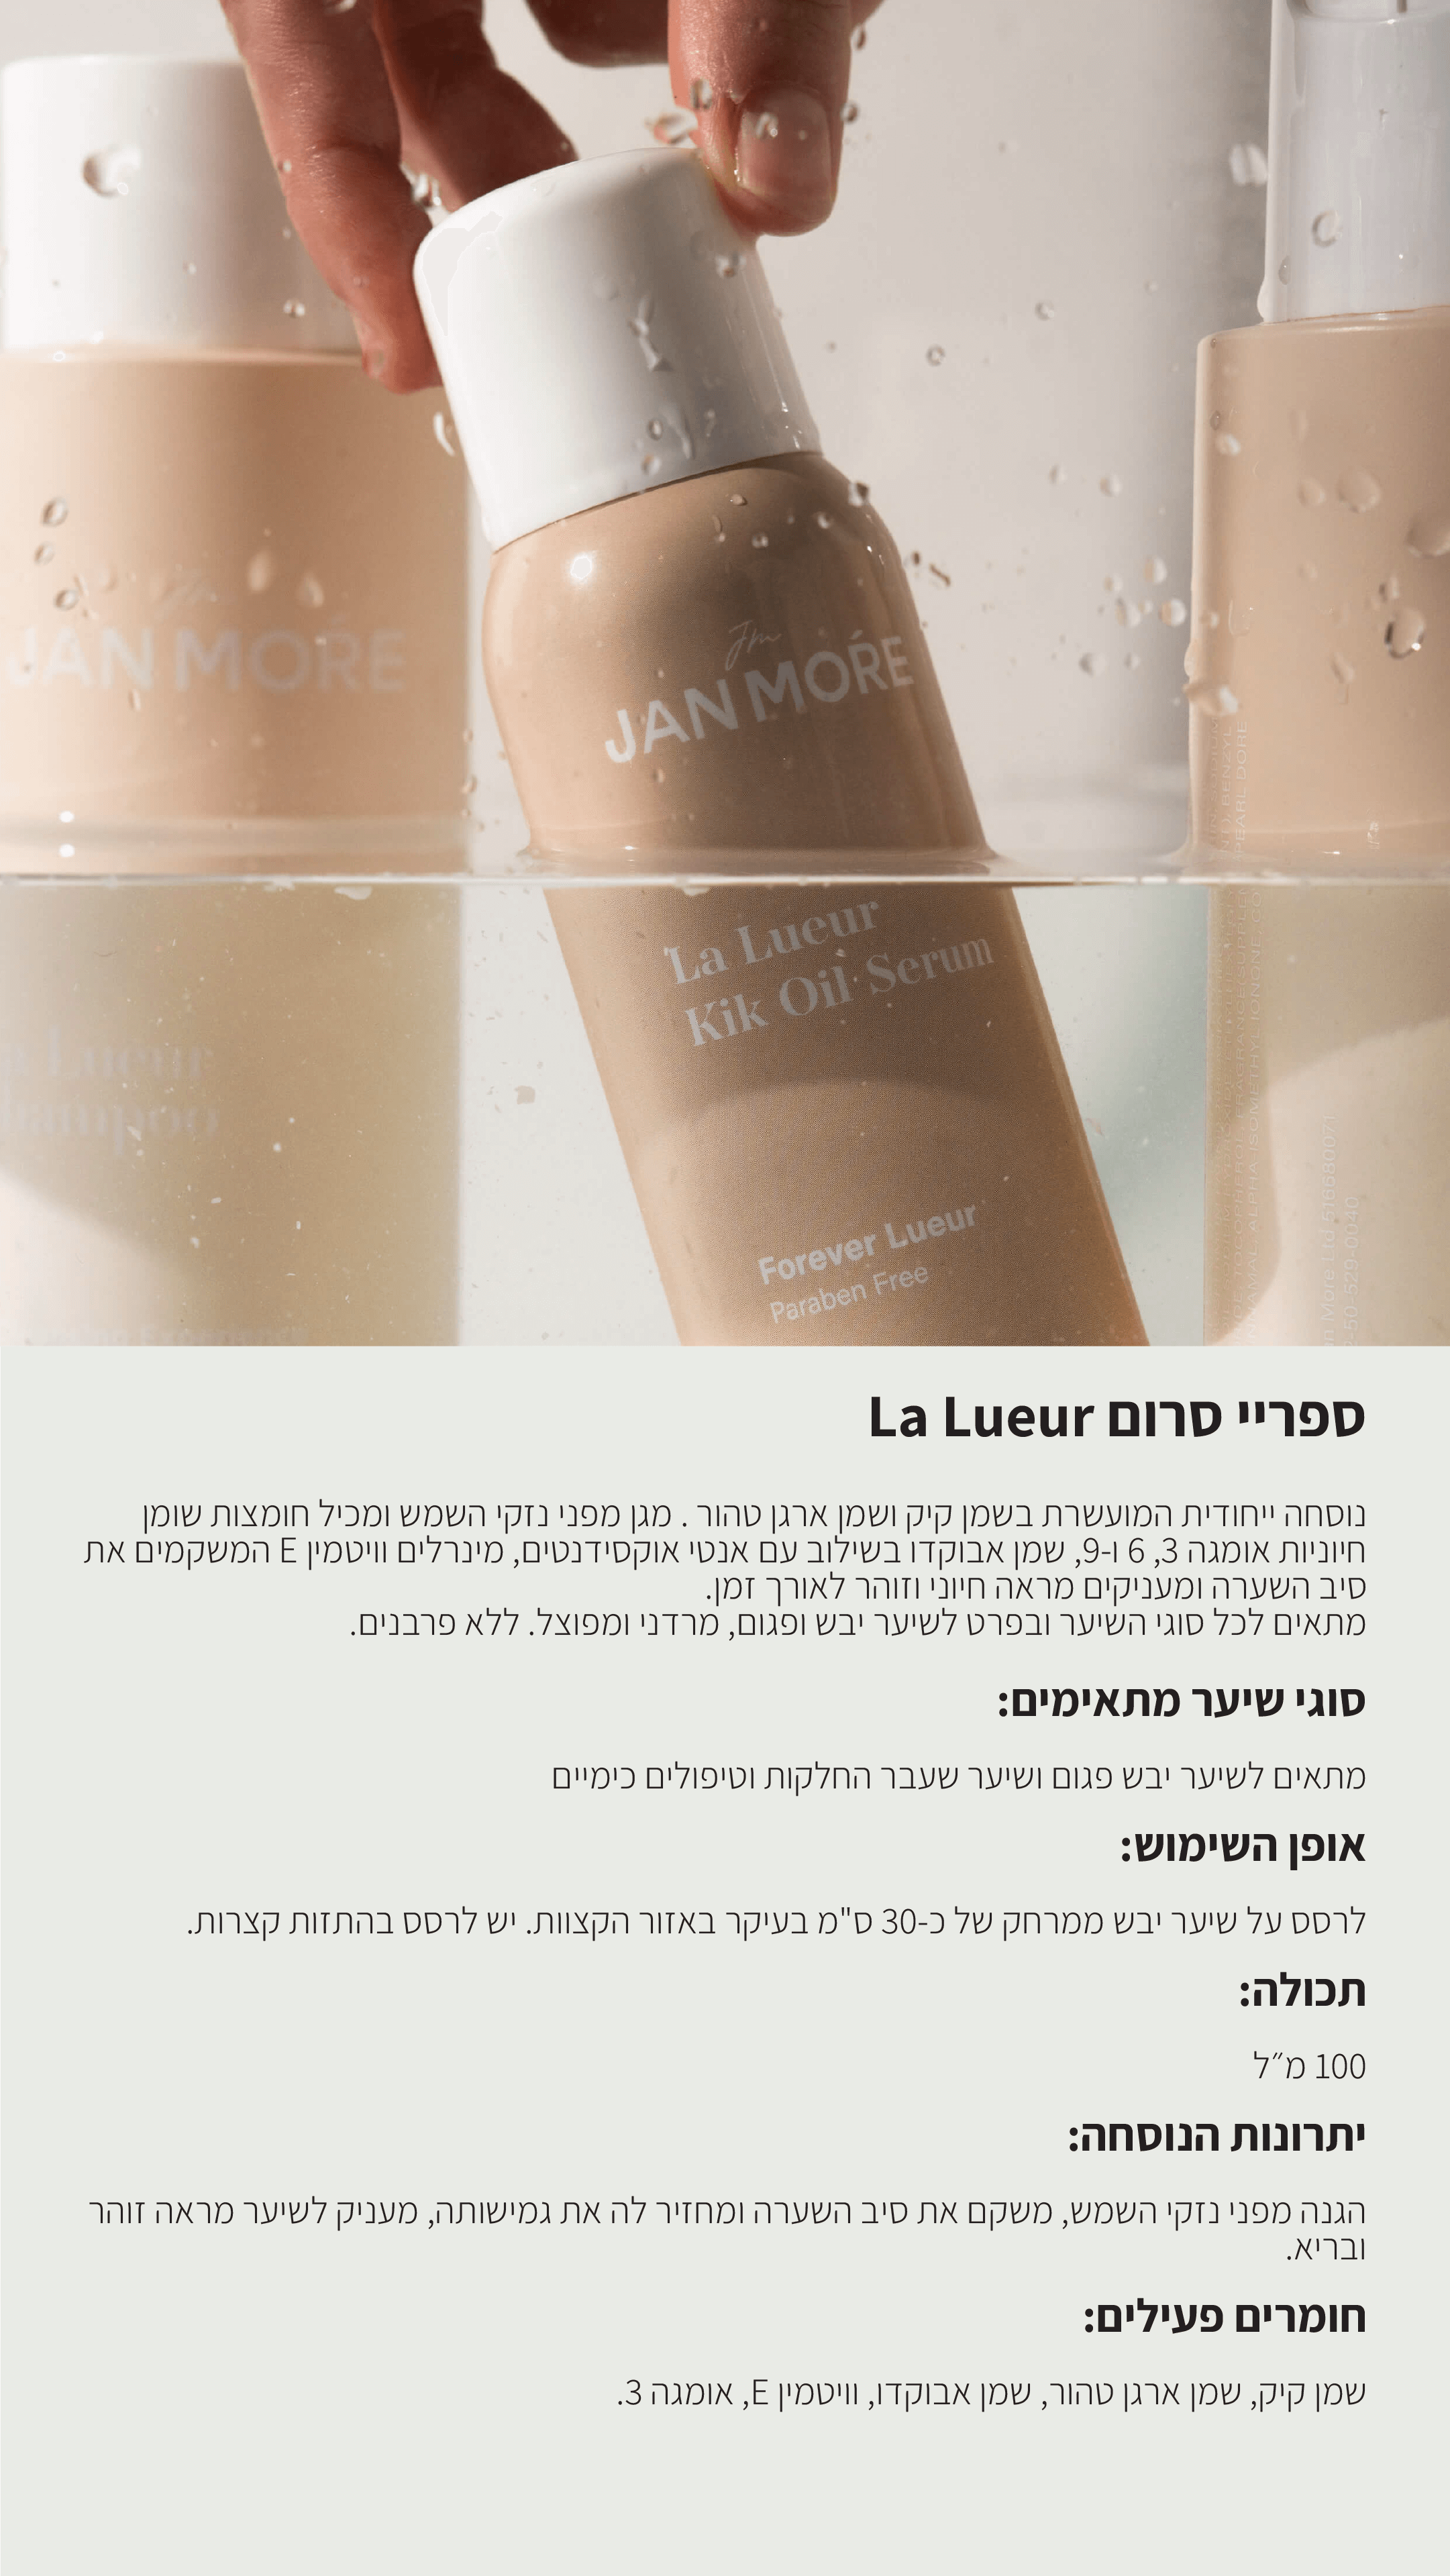 Product details - La Lueur serum phone3